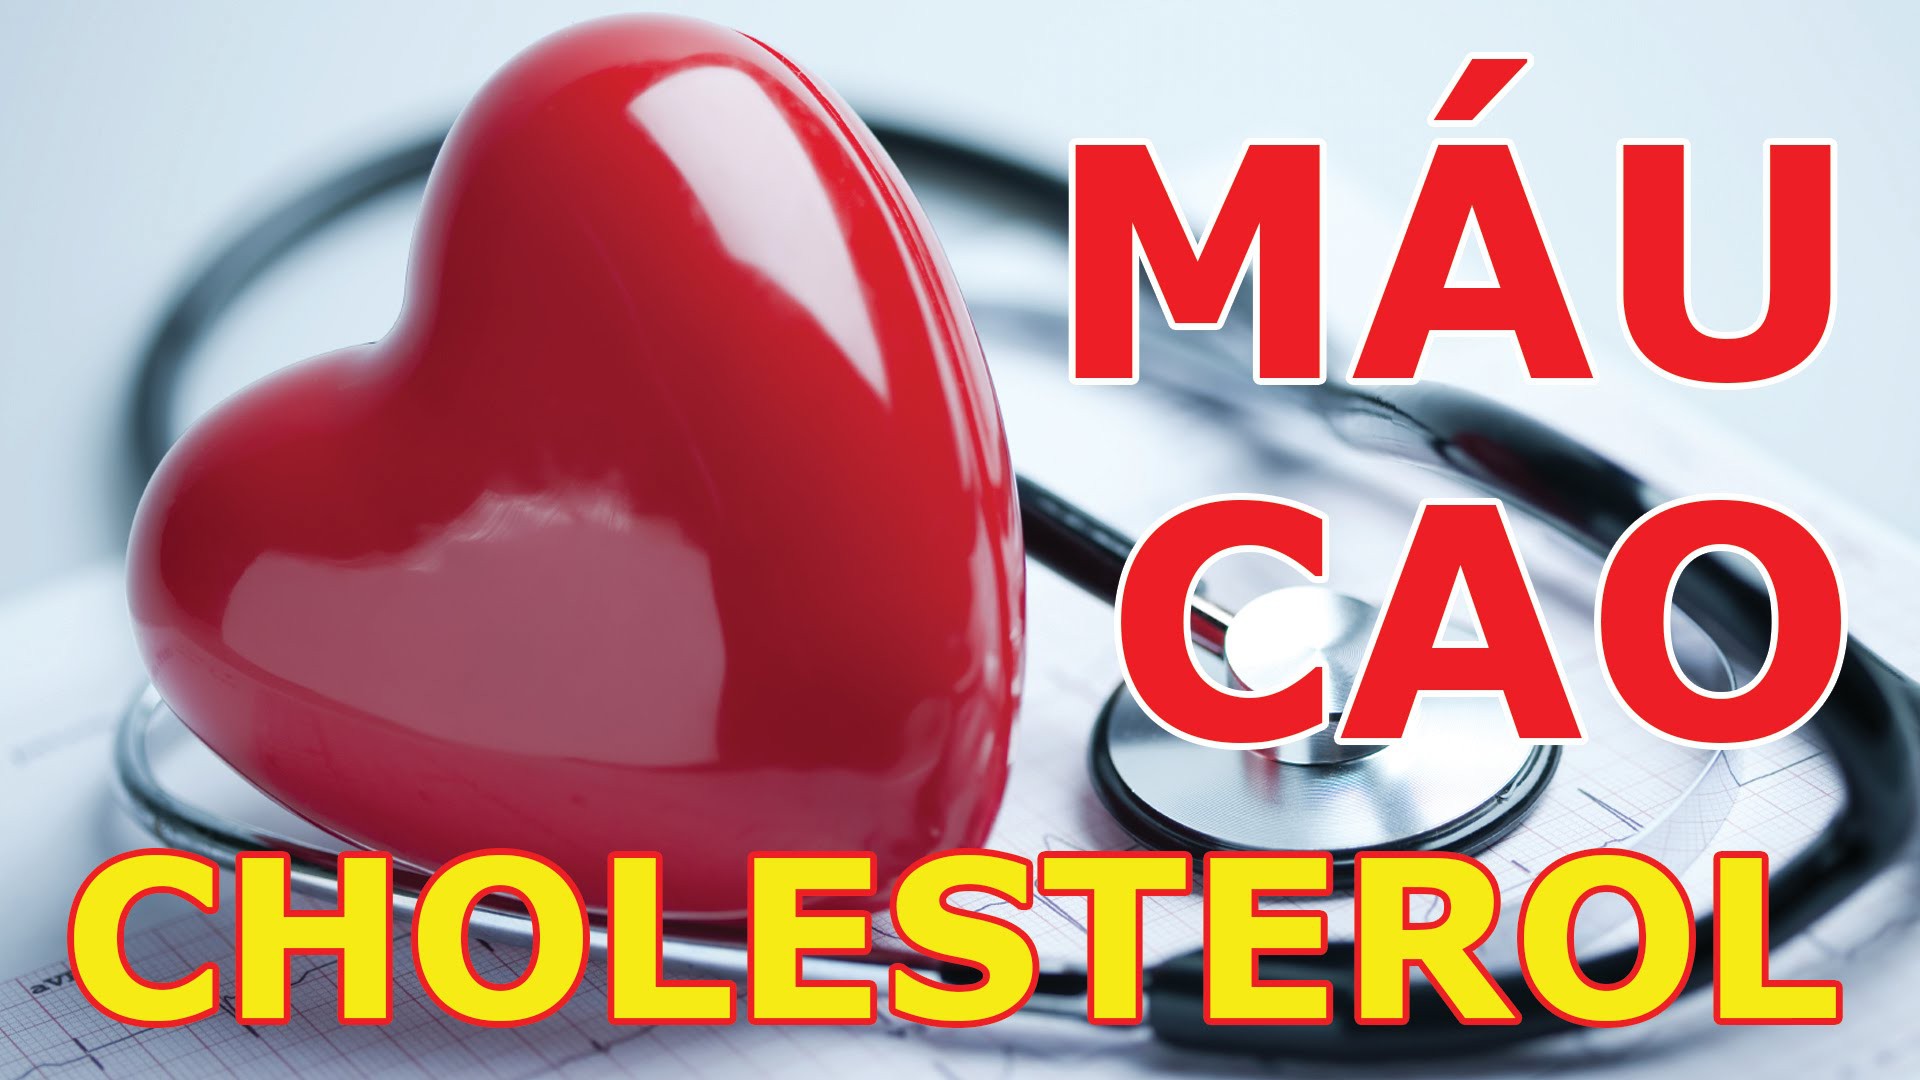 Bệnh Cholesterol cao là gì? Những điều về bệnh cholesterol cao bạn nên biết - Ảnh 1.